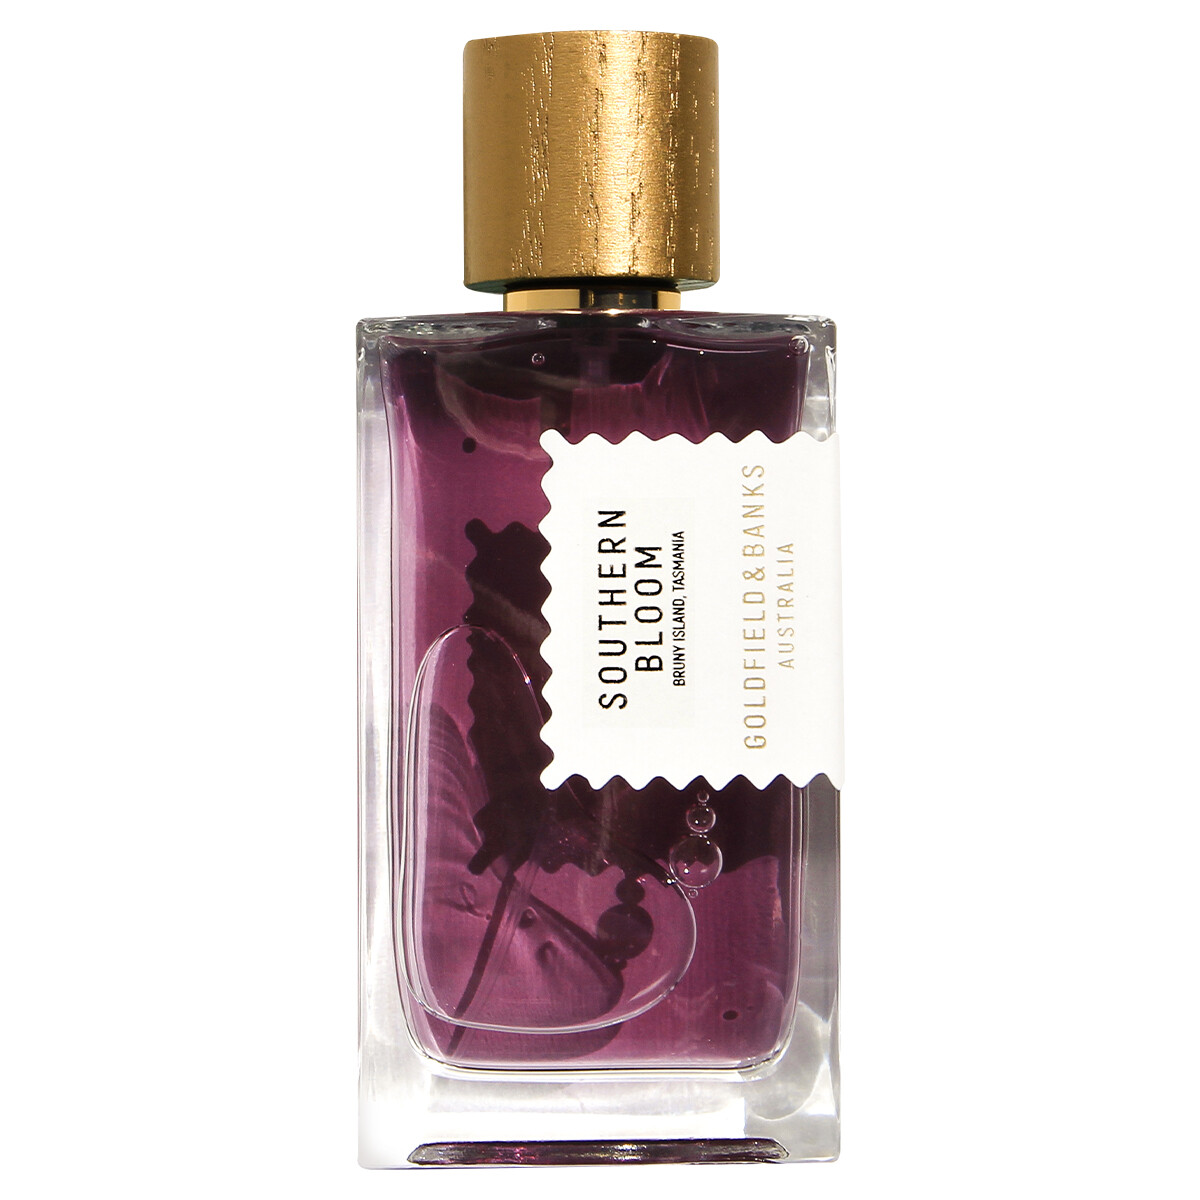 Luxus Parfum Goldfield und Banks Southern Bloom Parfum 100ml bestellen